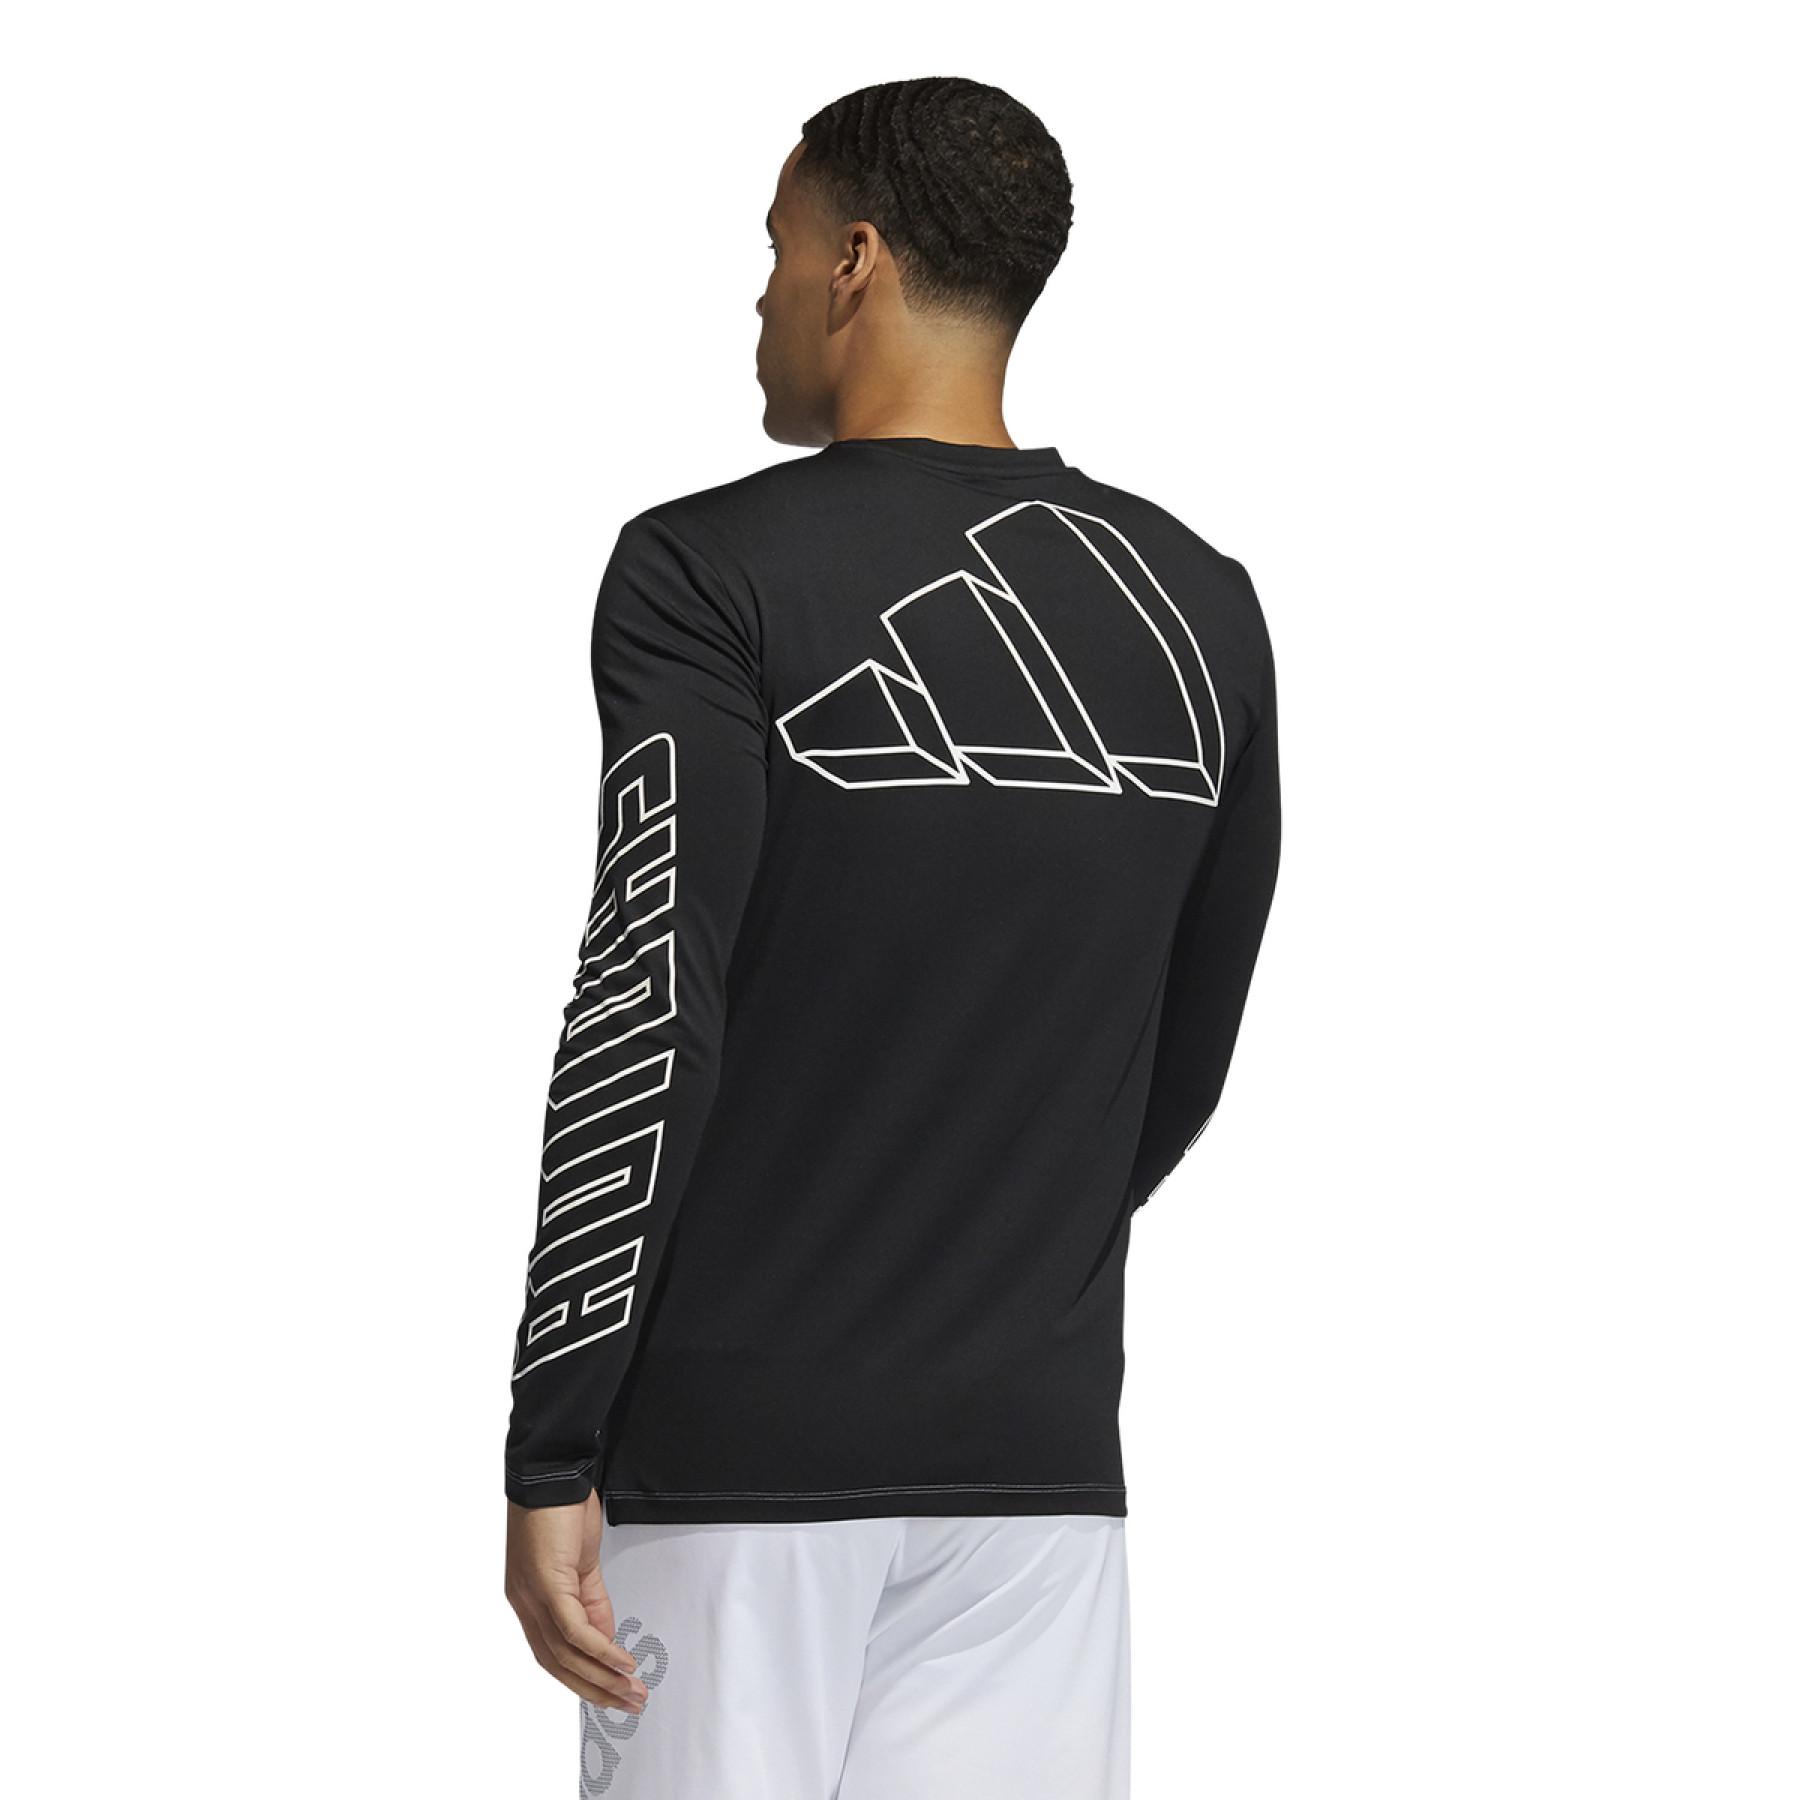 T-shirt met lange mouwen adidas FB Hype